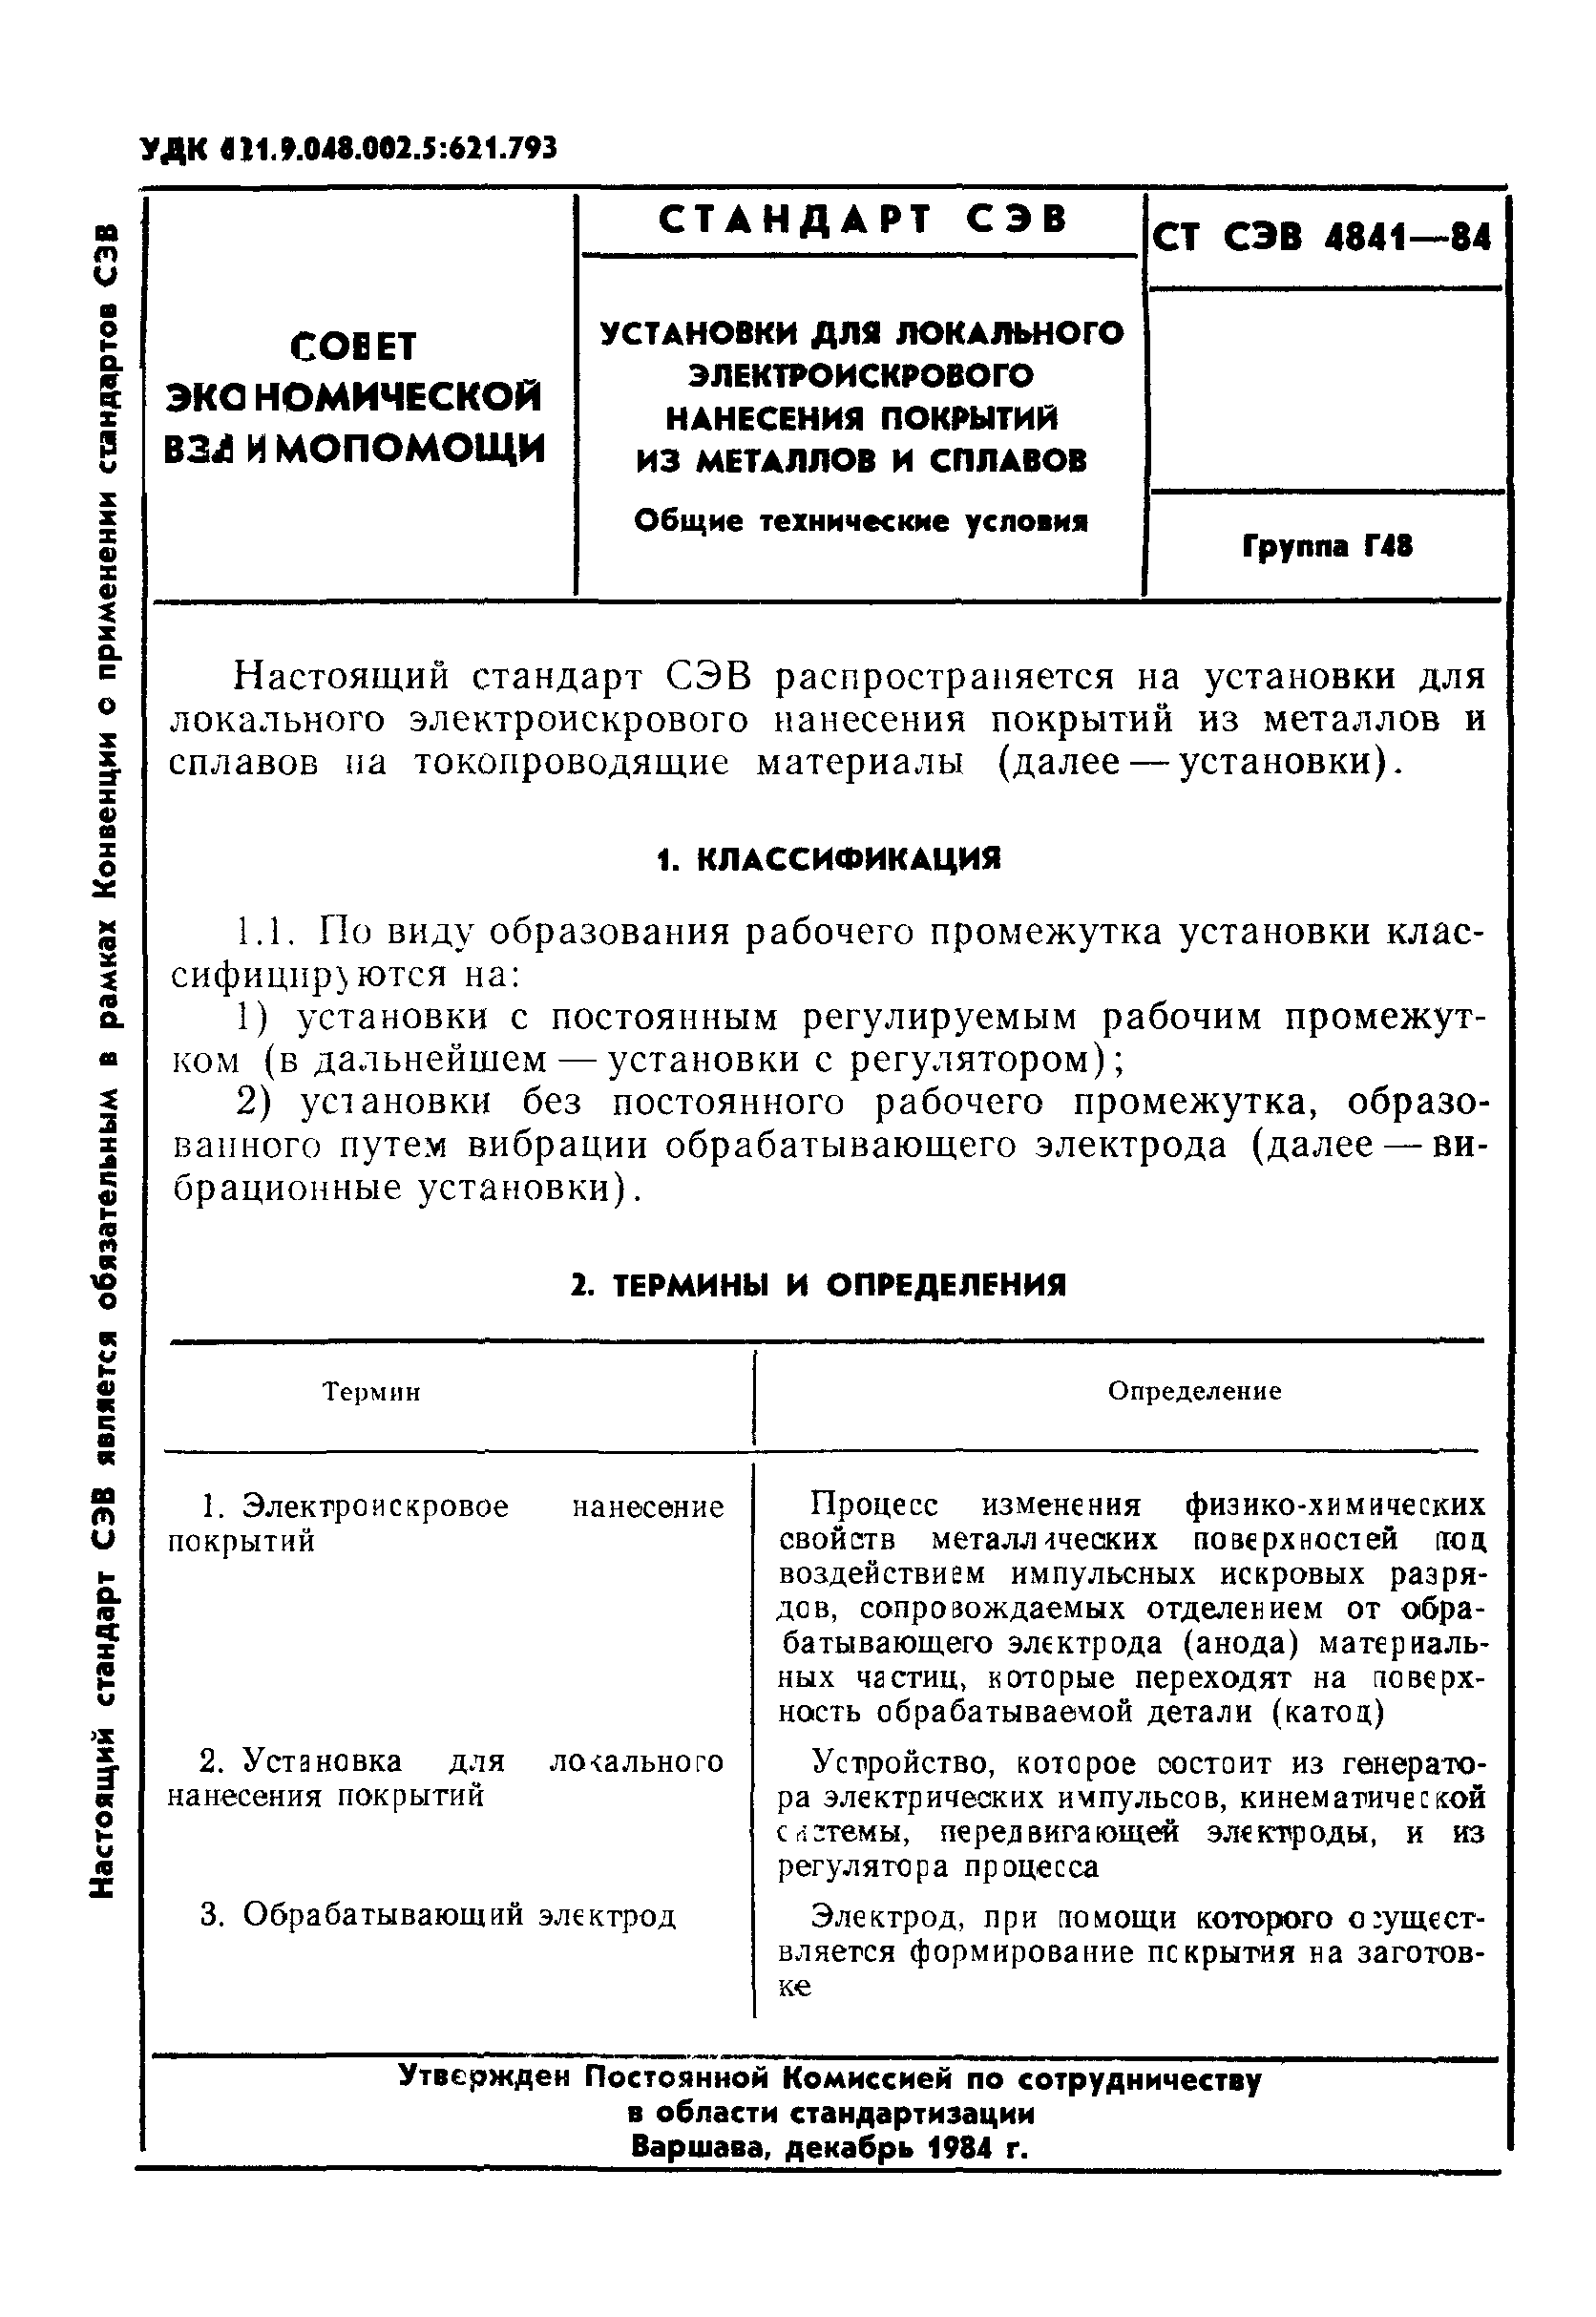 СТ СЭВ 4841-84